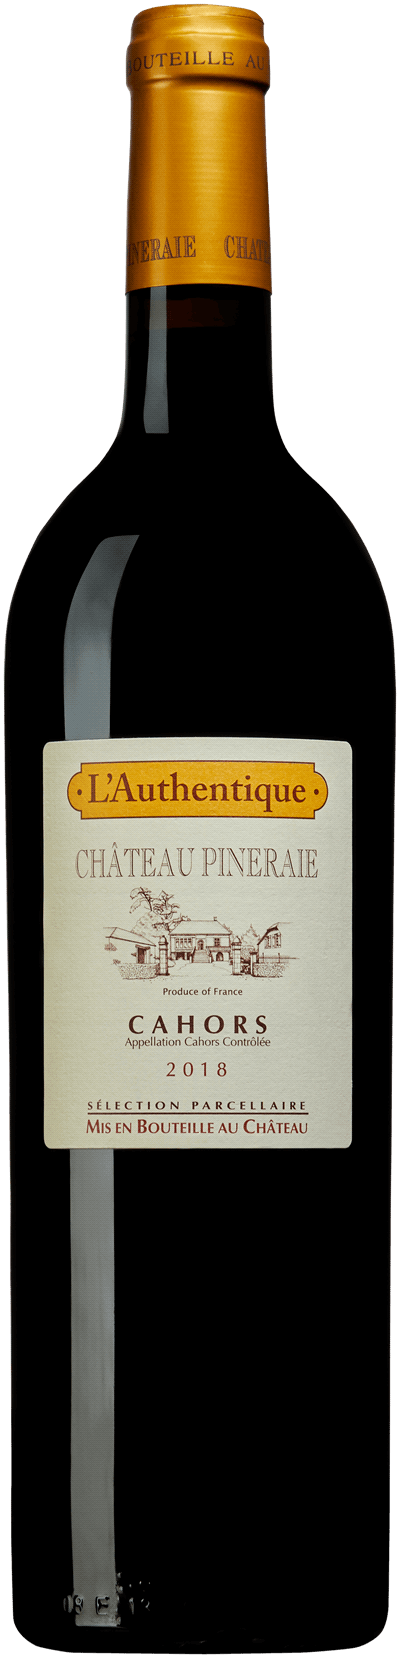 L'Authentique Château Pineraie, 2018